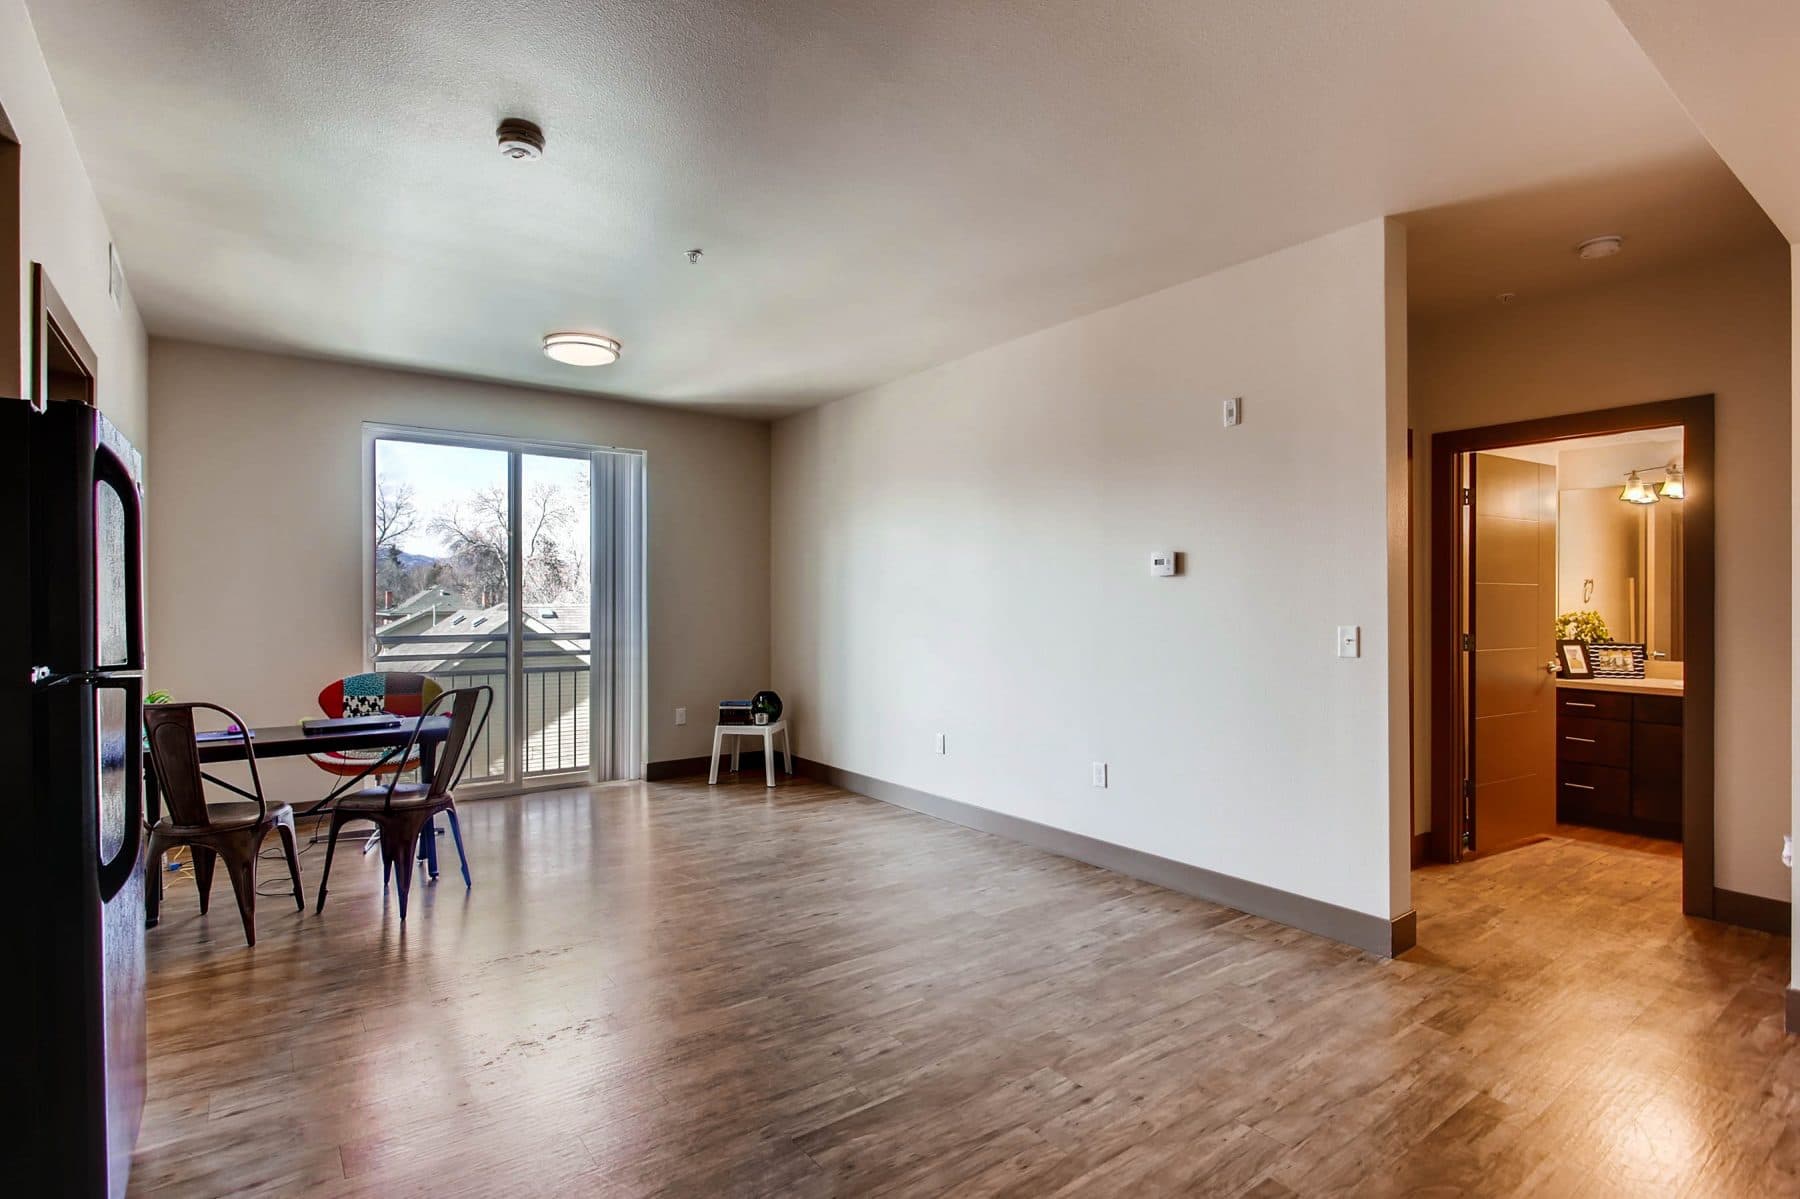 Max Flats Fort Collins Apartments